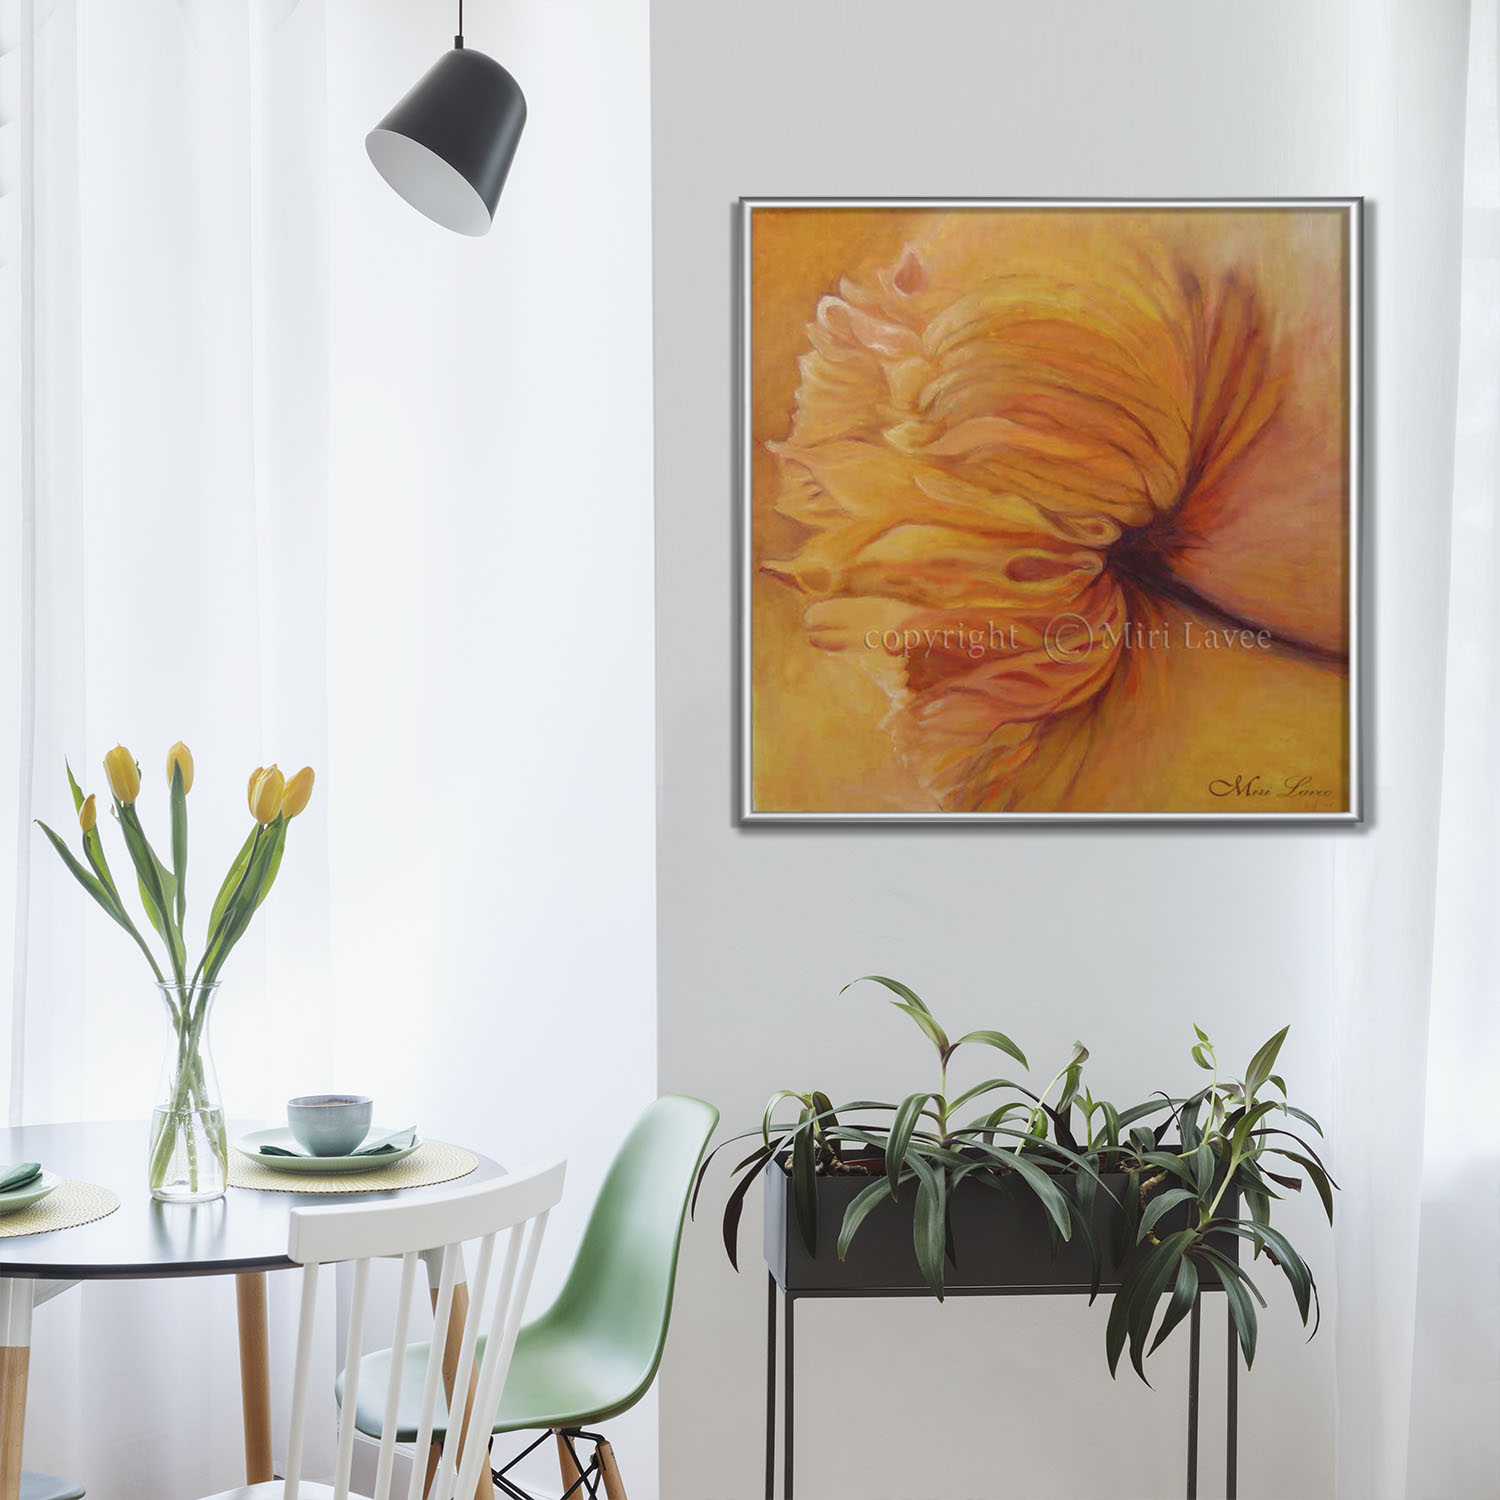 הציור רכות ציור פרח גדול בגוונים כתומים וצהובים בחדר המשפחה, ציירת מירי לביא.